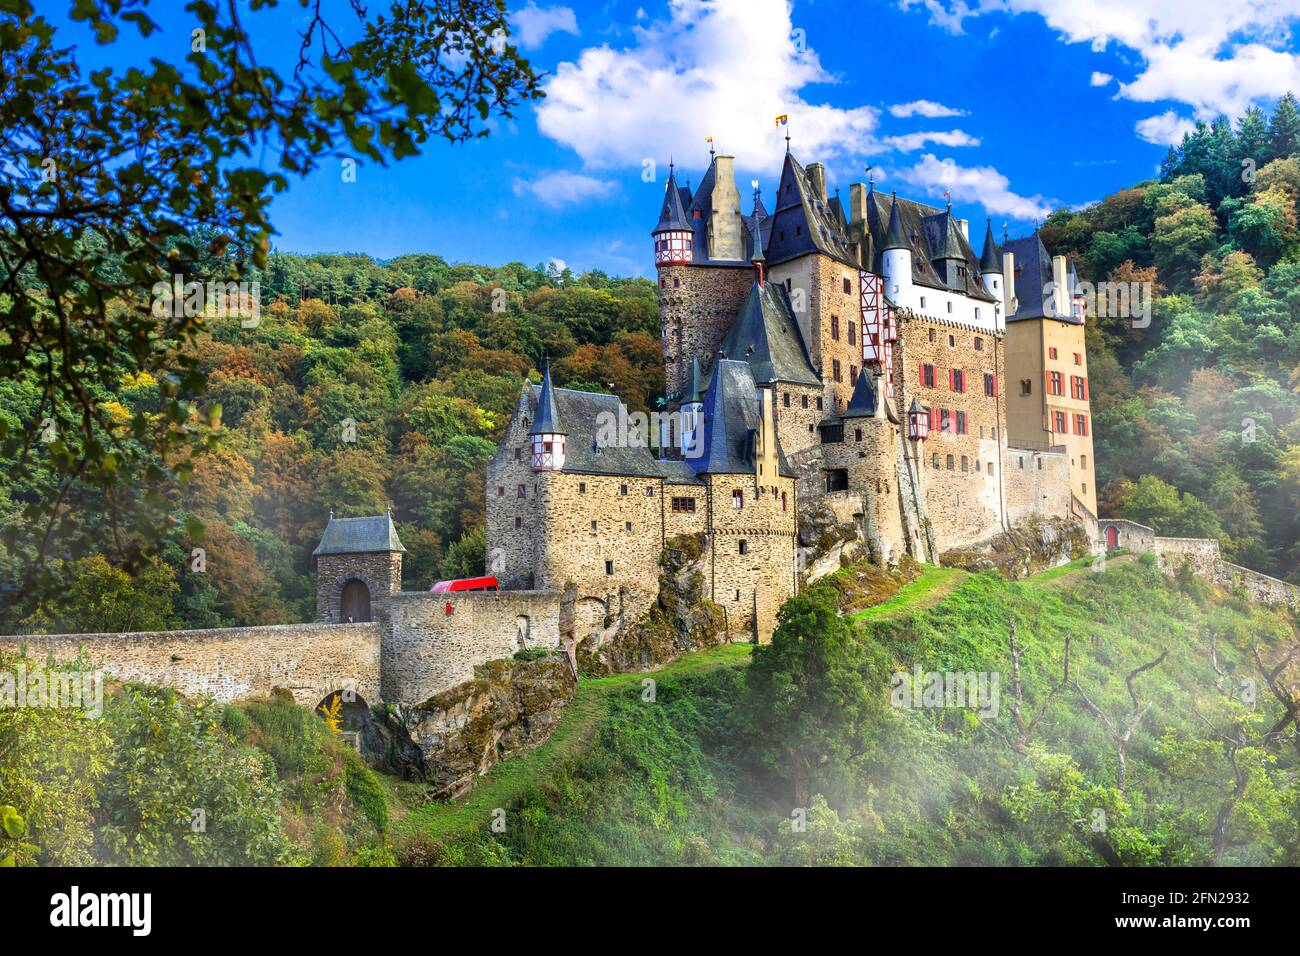 Burg Eltz - l'un des plus beaux châteaux d'Europe. Voyage en Allemagne et sites historiques Banque D'Images